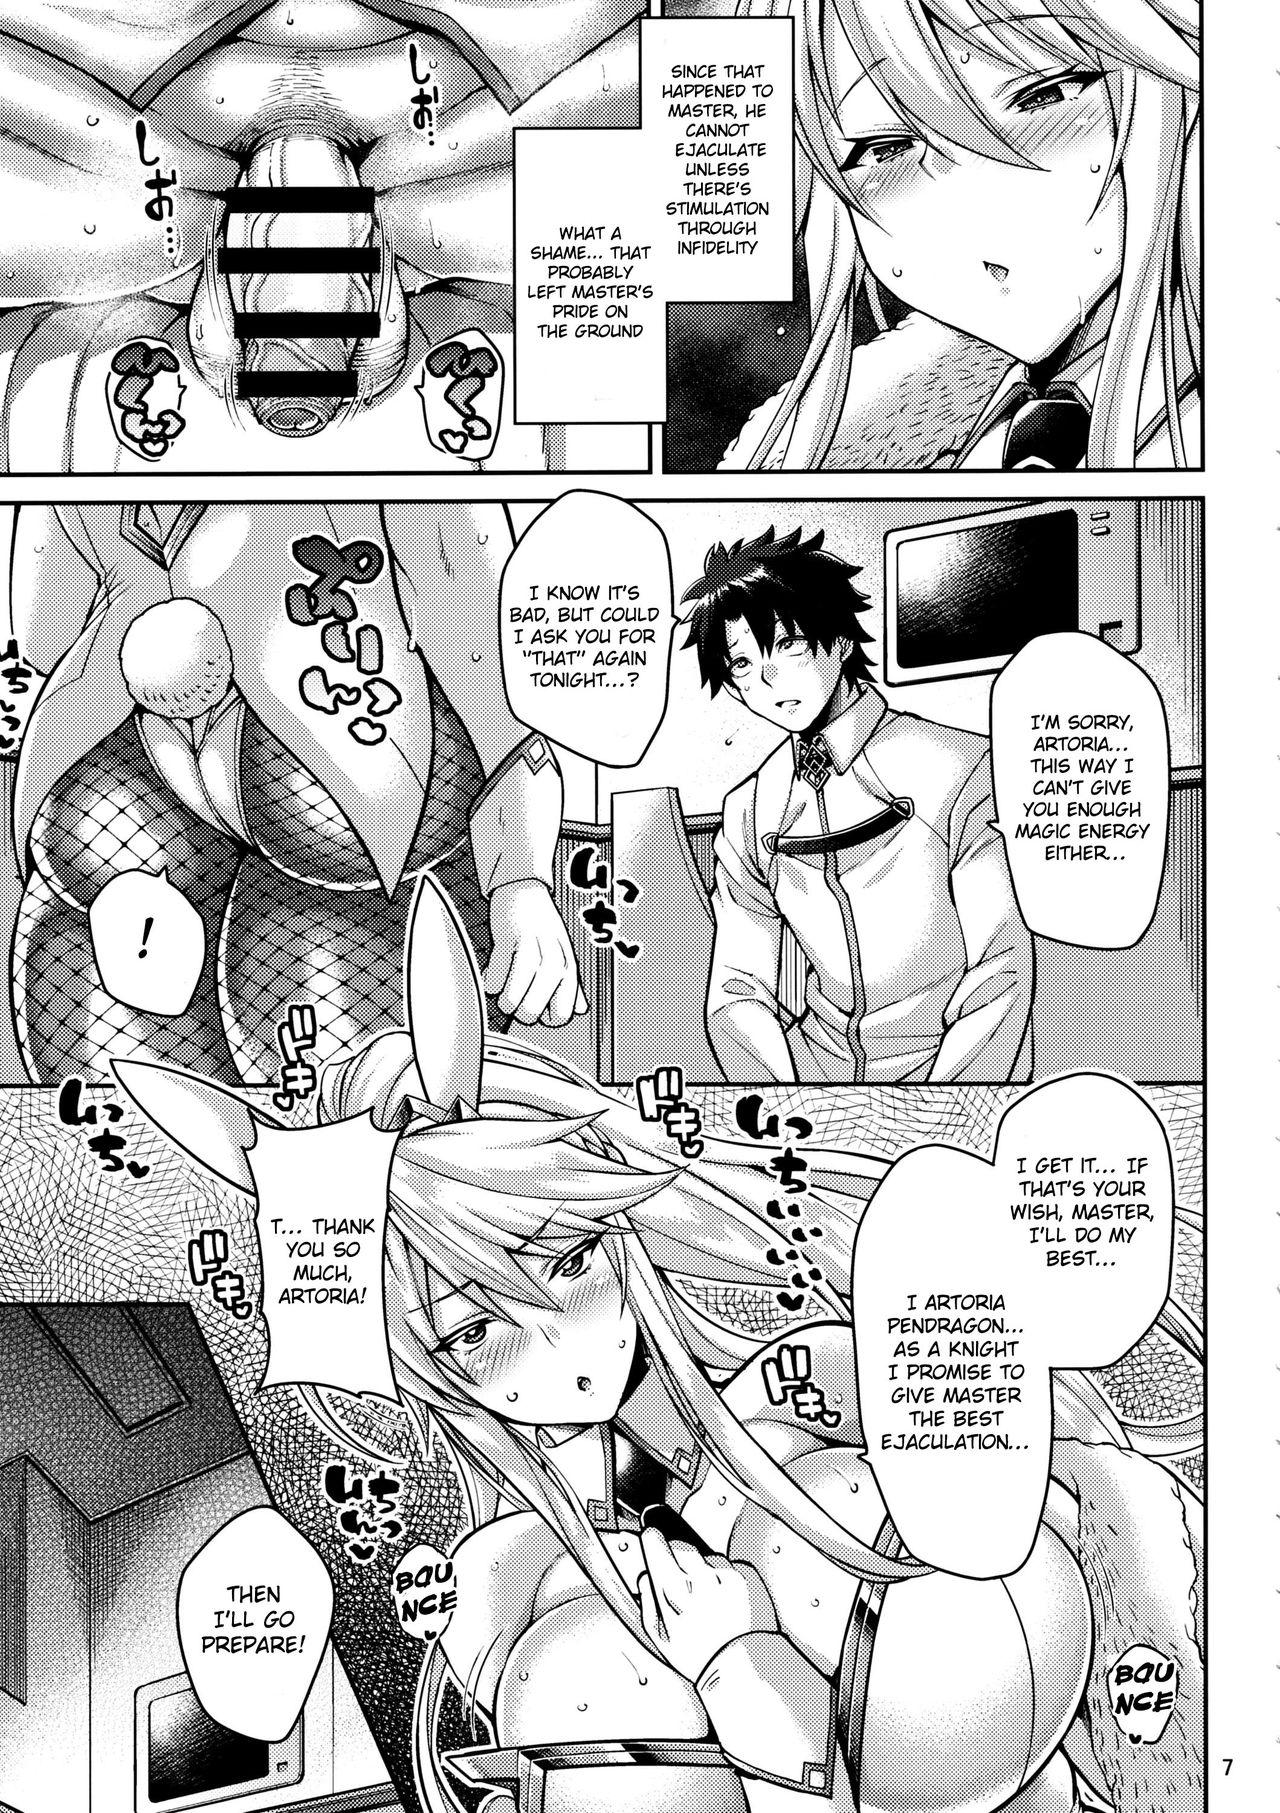 4some Chin Kobi Bunny no Netorase Koubi Kiroku - Fate grand order Gay 3some - Page 6